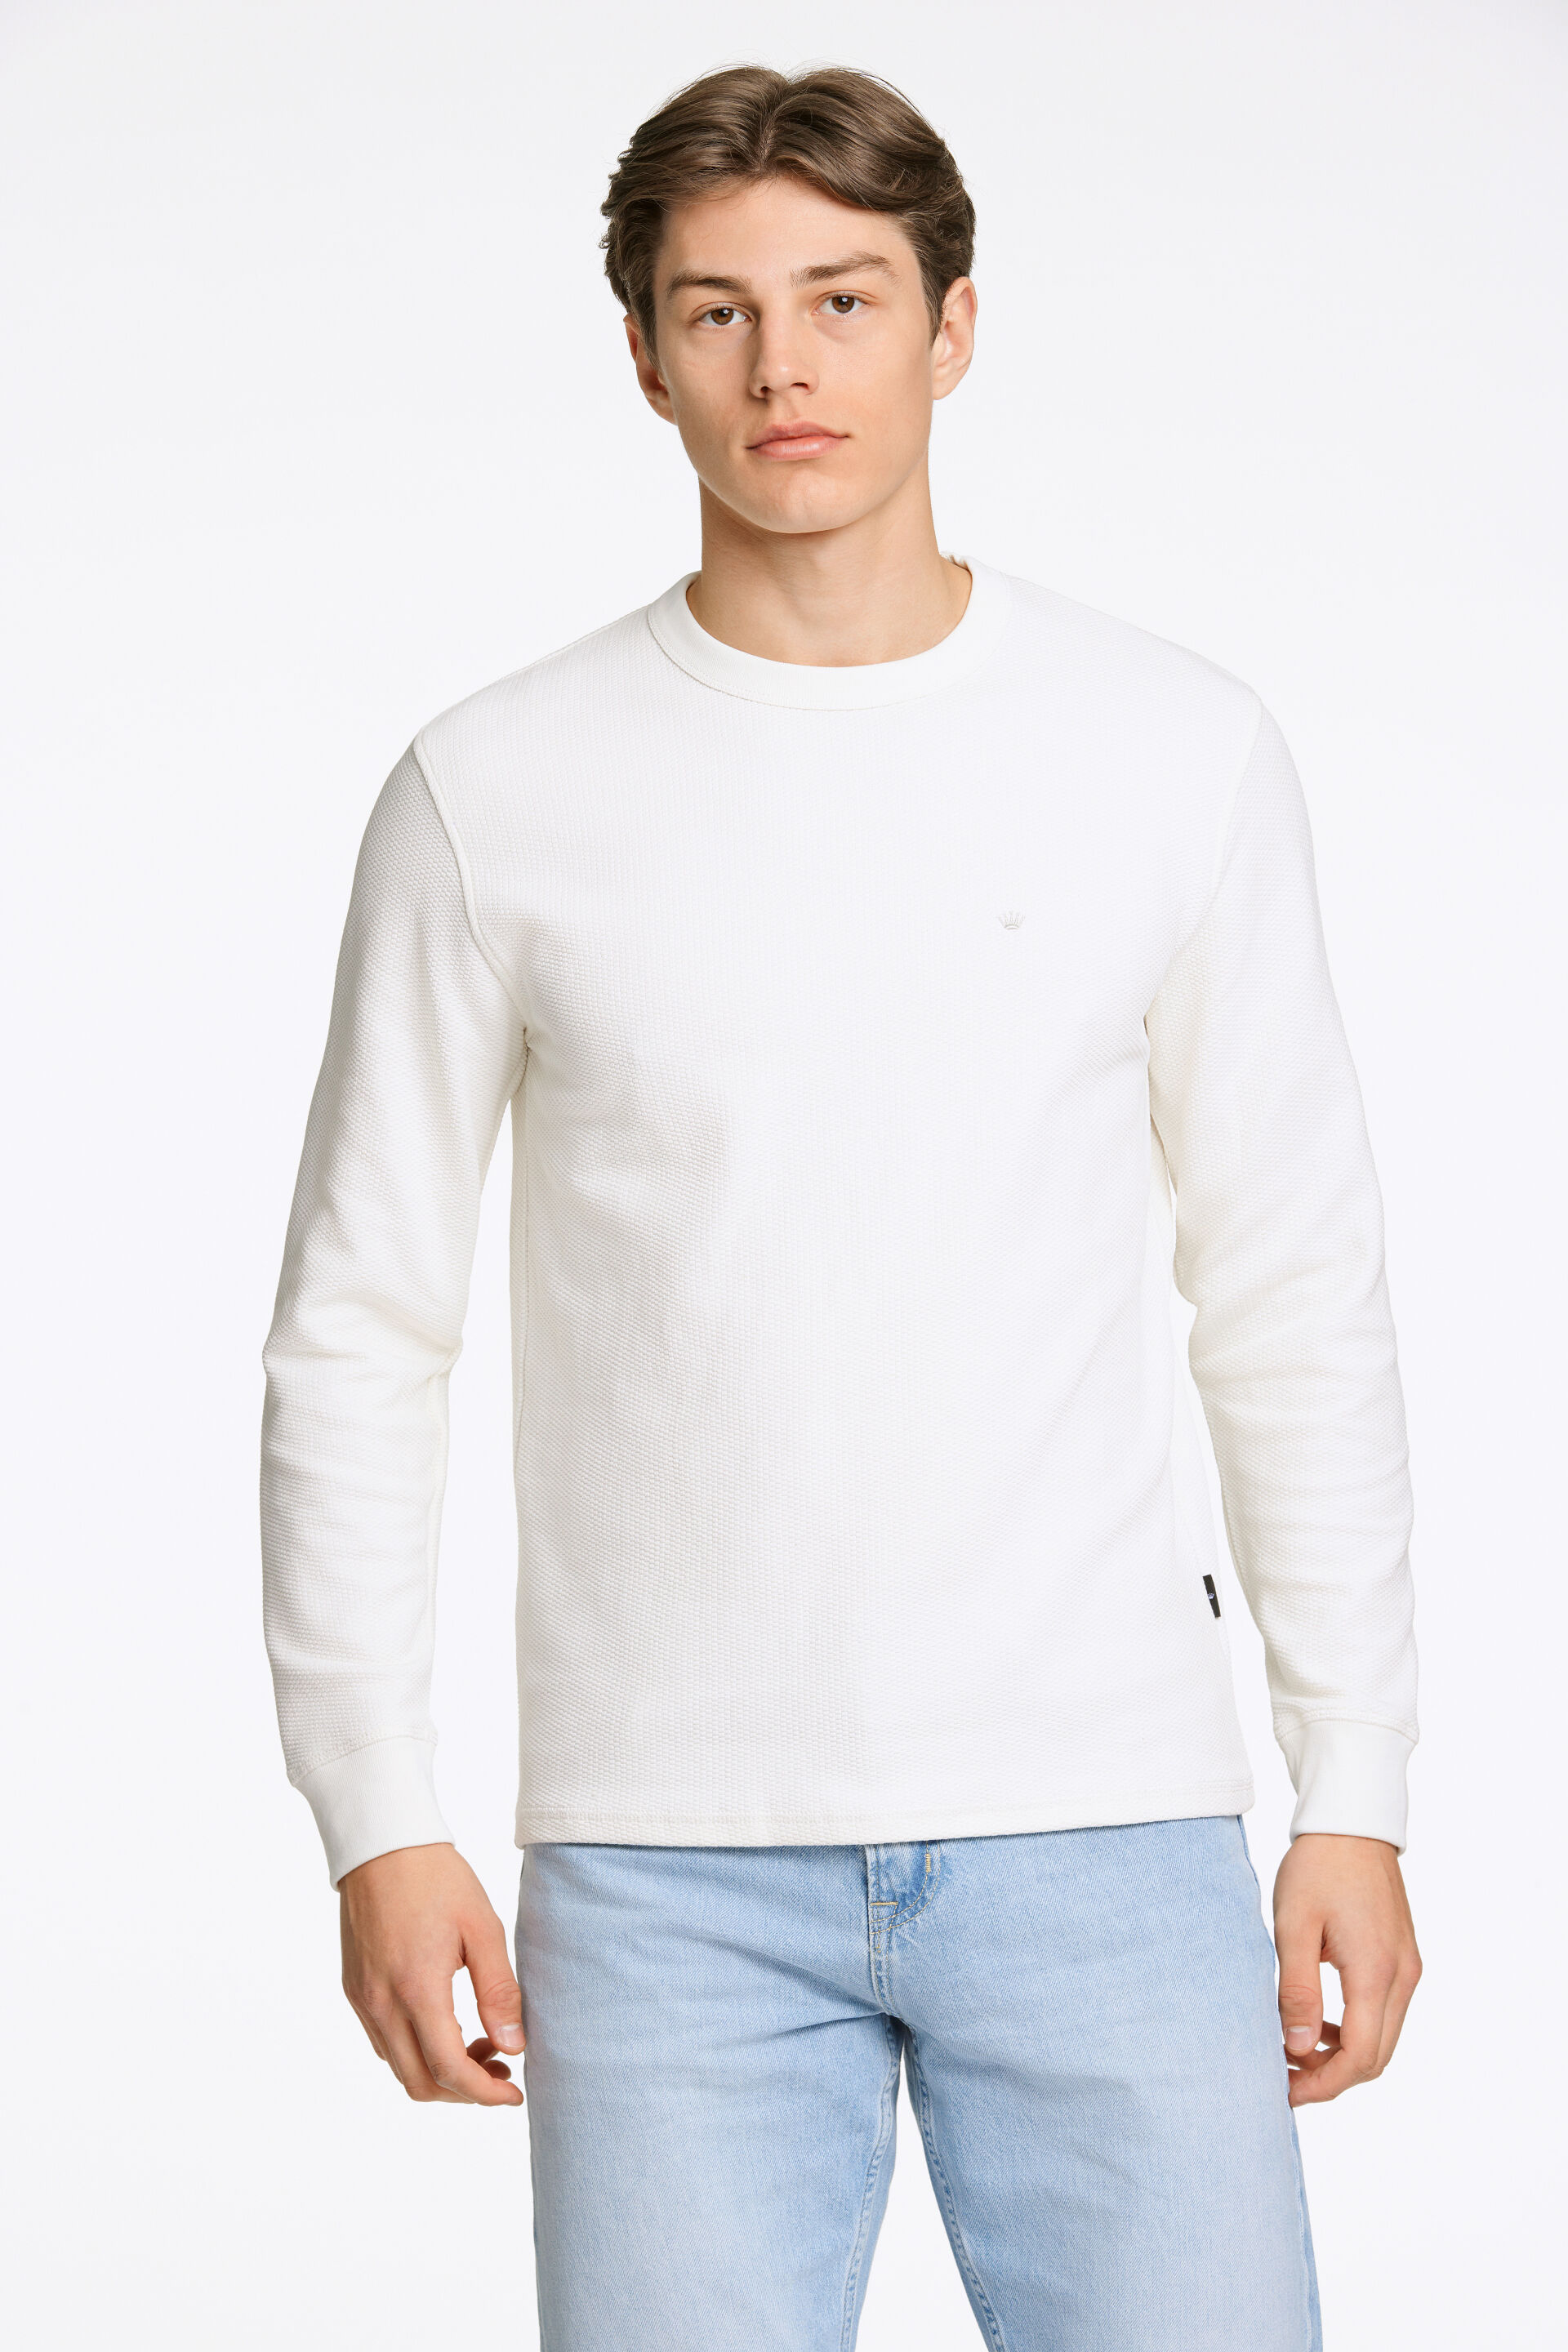 Junk de Luxe  Sweatshirt Vit 60-702019